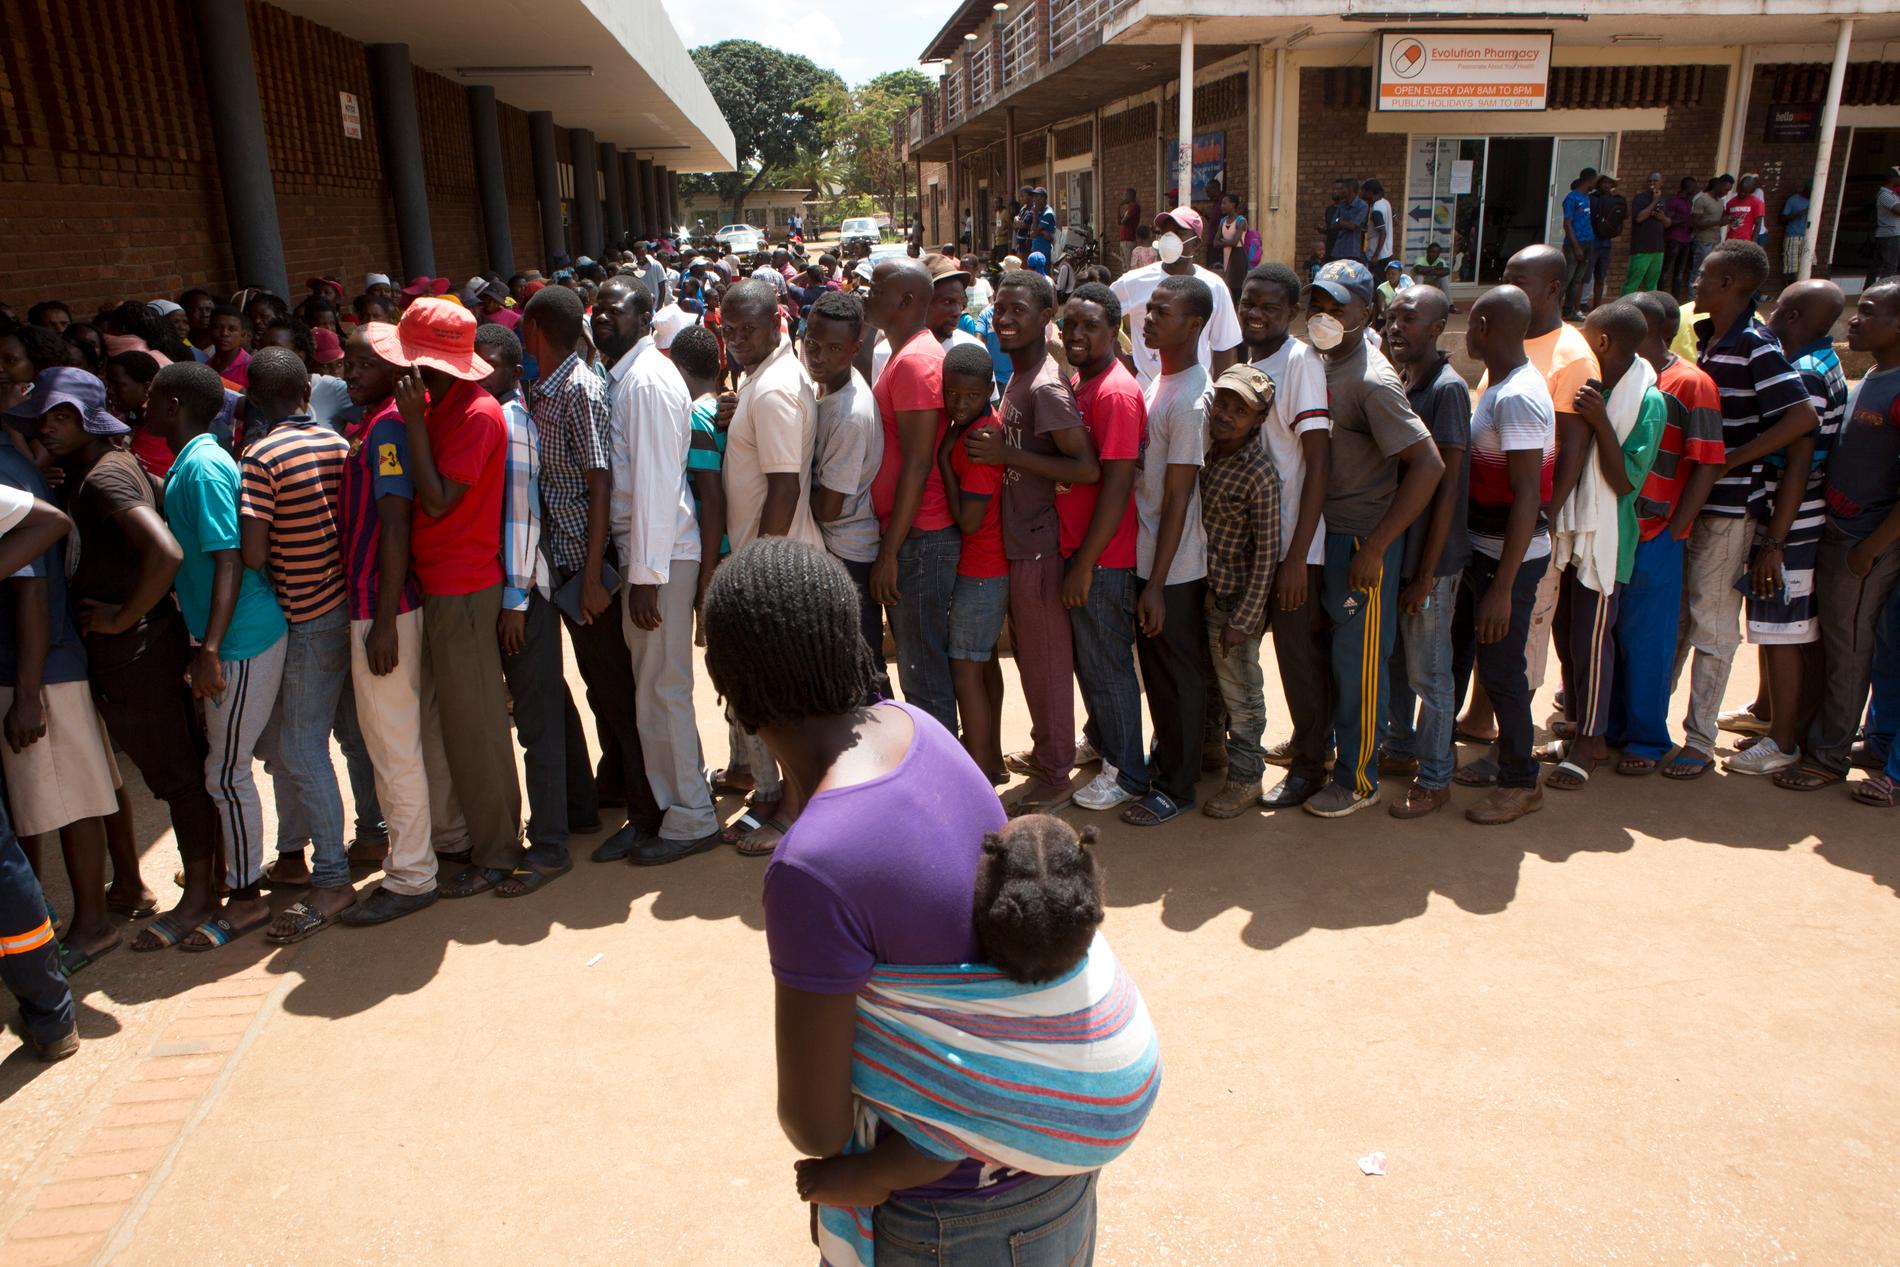 HARARE, ZIMBAWE Tätt packade står en grupp människor och väntar på att få handla. Under onsdagen gick läkare i Zimbawe ut i strejk i protest mot att de tvingas jobba med otillräcklig skyddsutrustning, samtidigt som coronaviruset sprids i landet.